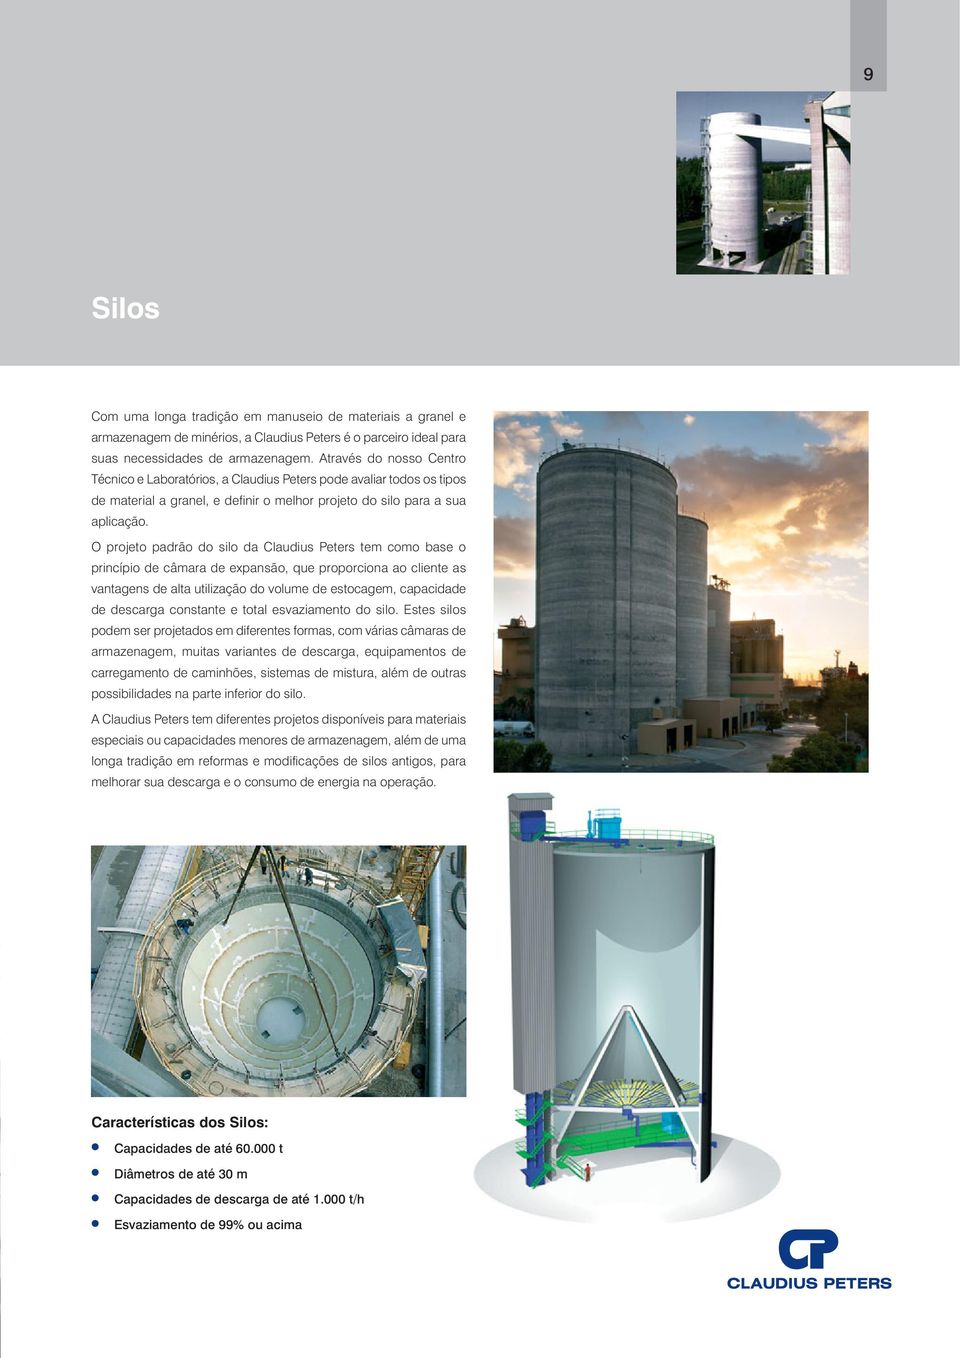 O projeto padrão do silo da Claudius Peters tem como base o princípio de câmara de expansão, que proporciona ao cliente as vantagens de alta utilização do volume de estocagem, capacidade de descarga